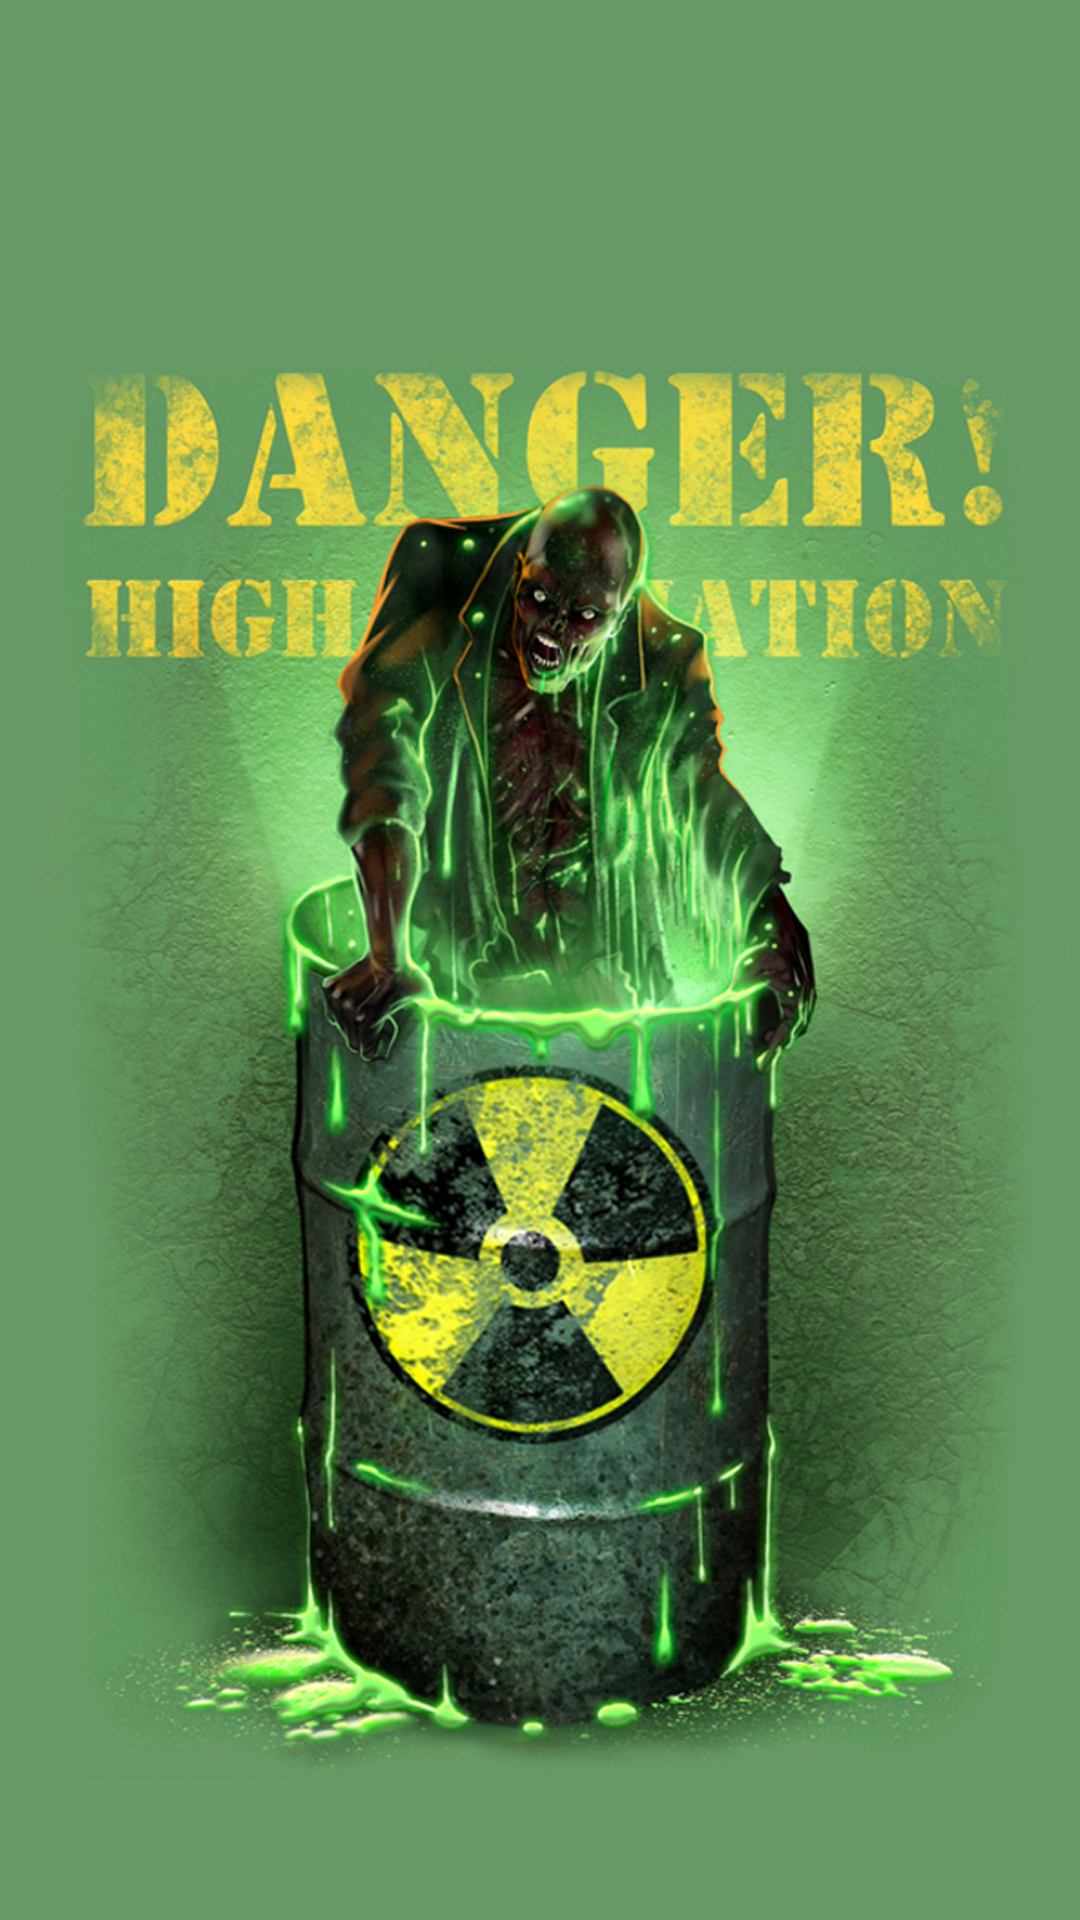 Danger Zombie Halloween - Radioactive Zombie , HD Wallpaper & Backgrounds